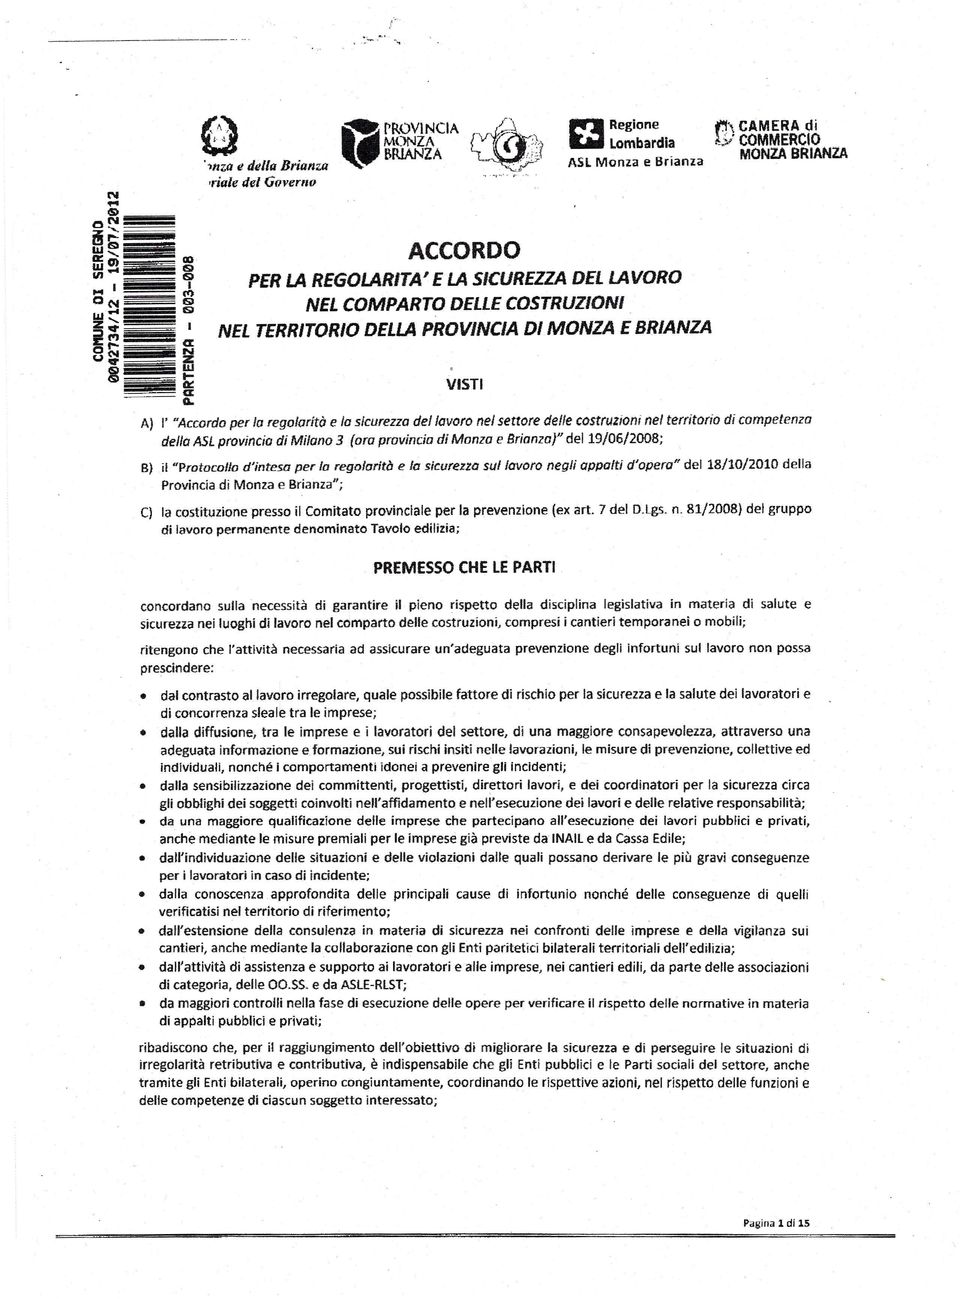 ASLprovincia di Milano 3 (ara provincio di Monza e Brianza)" del 19/06/2008; B) il "Protocollo d'intesa per lo regolarità e lo sicurezza su/lavoro negli appalti d'opera" del 18/10/2010 della